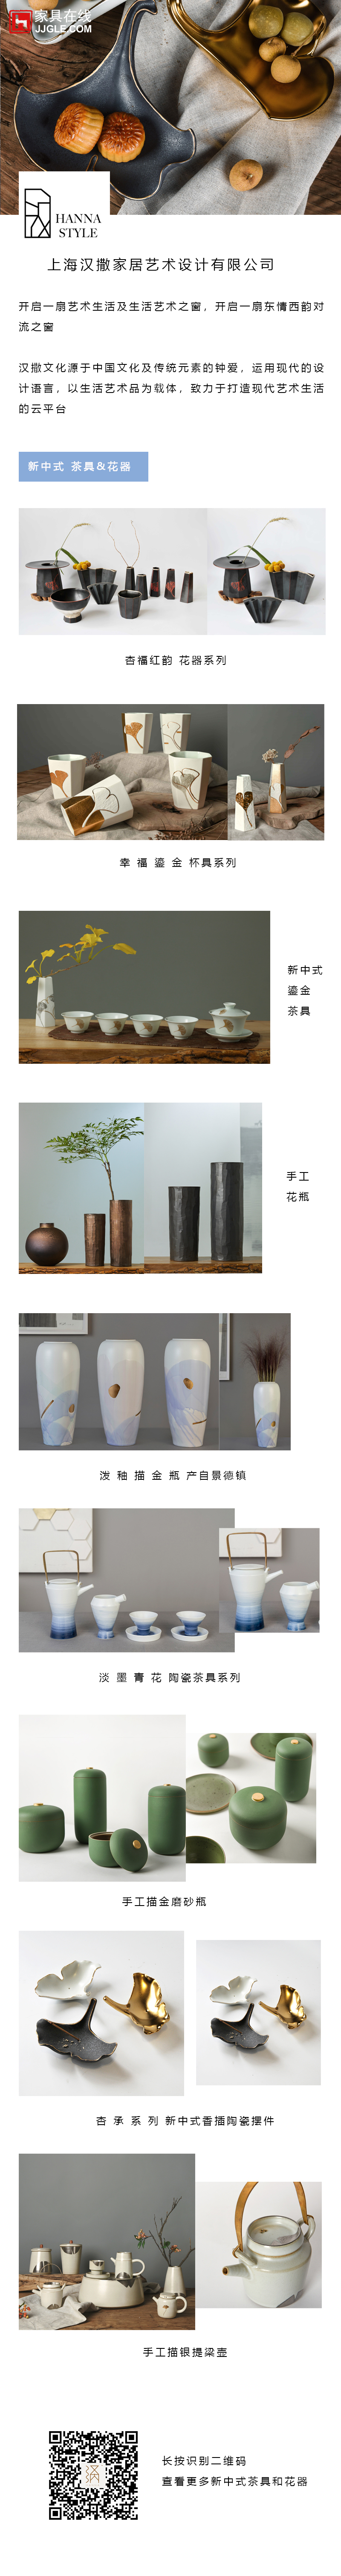 上海汉撒文化发展有限公司提供新中式茶具和花器